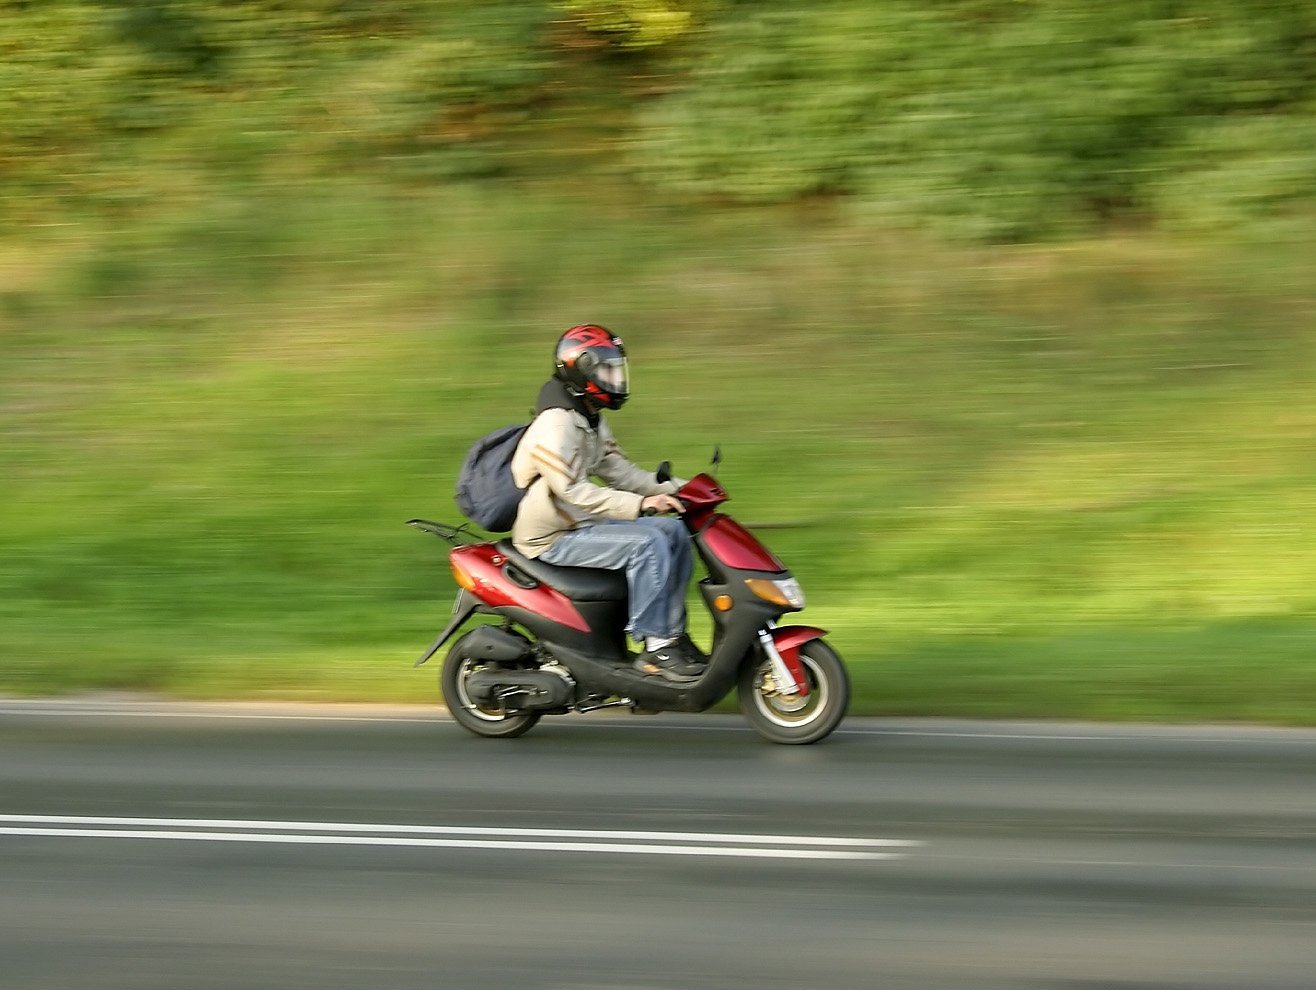 Человек на скутере. Скутер на дороге. Мотоцикл на дороге. Скутер мотоцикл. Подросток на скутере.